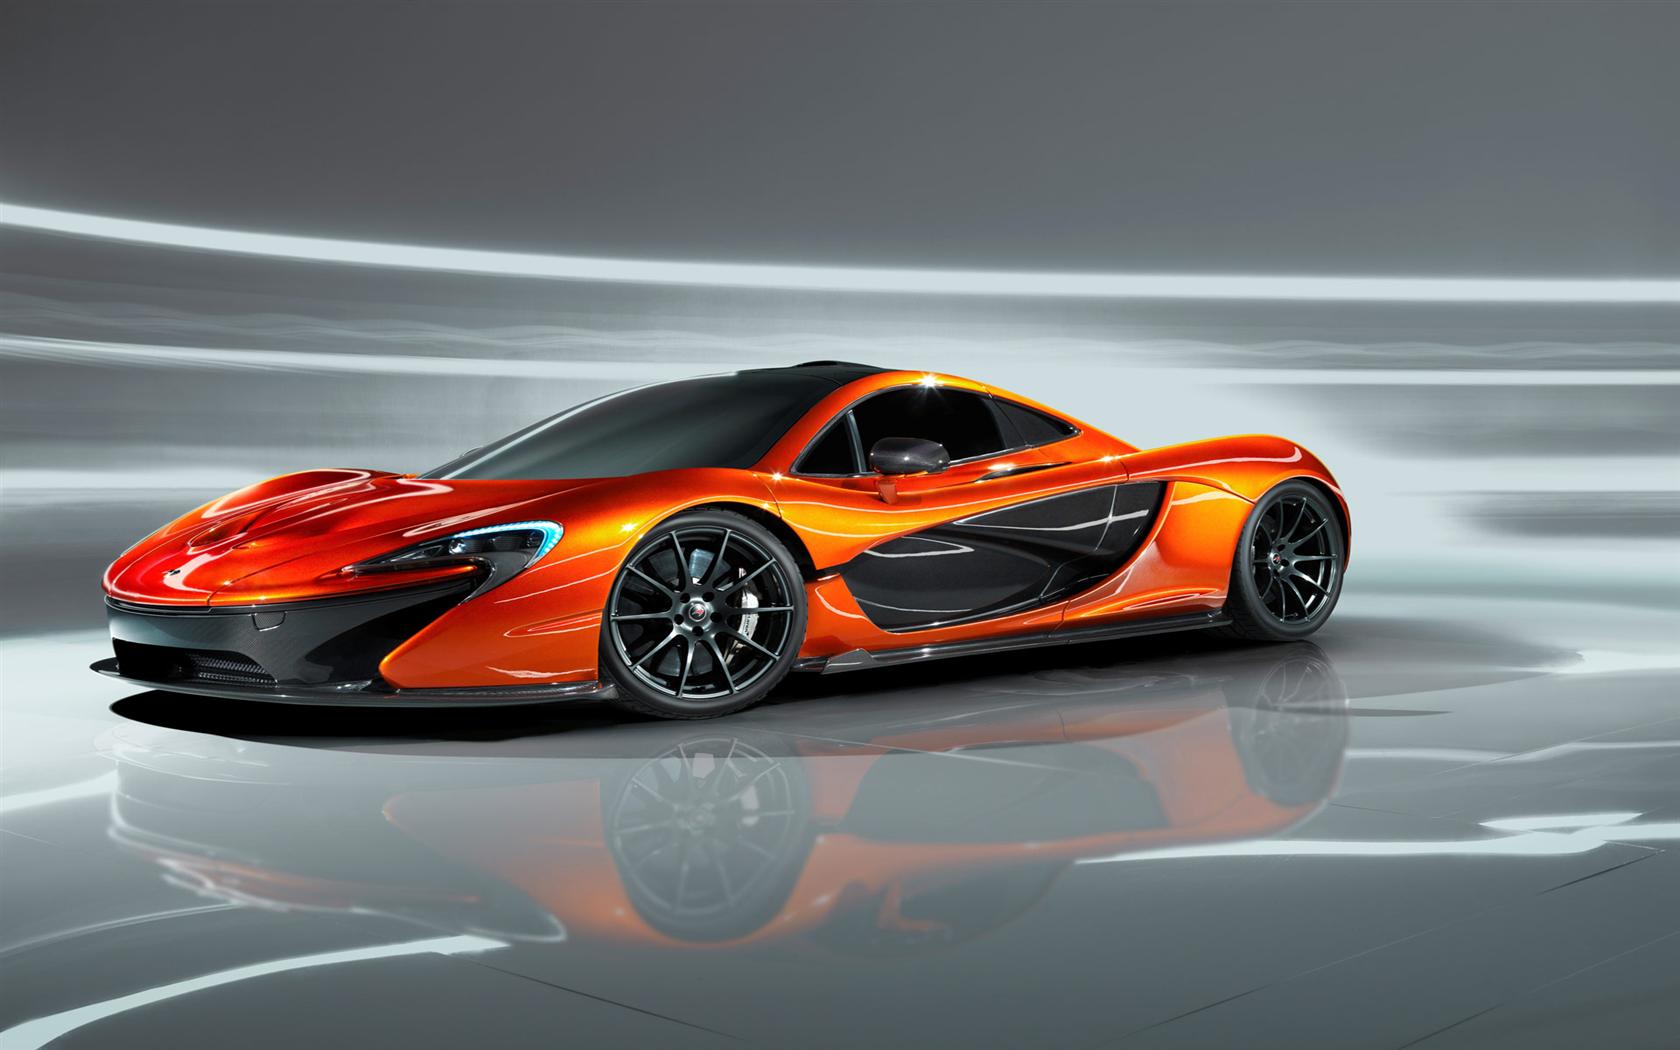 2013 McLaren P1 Concept Image